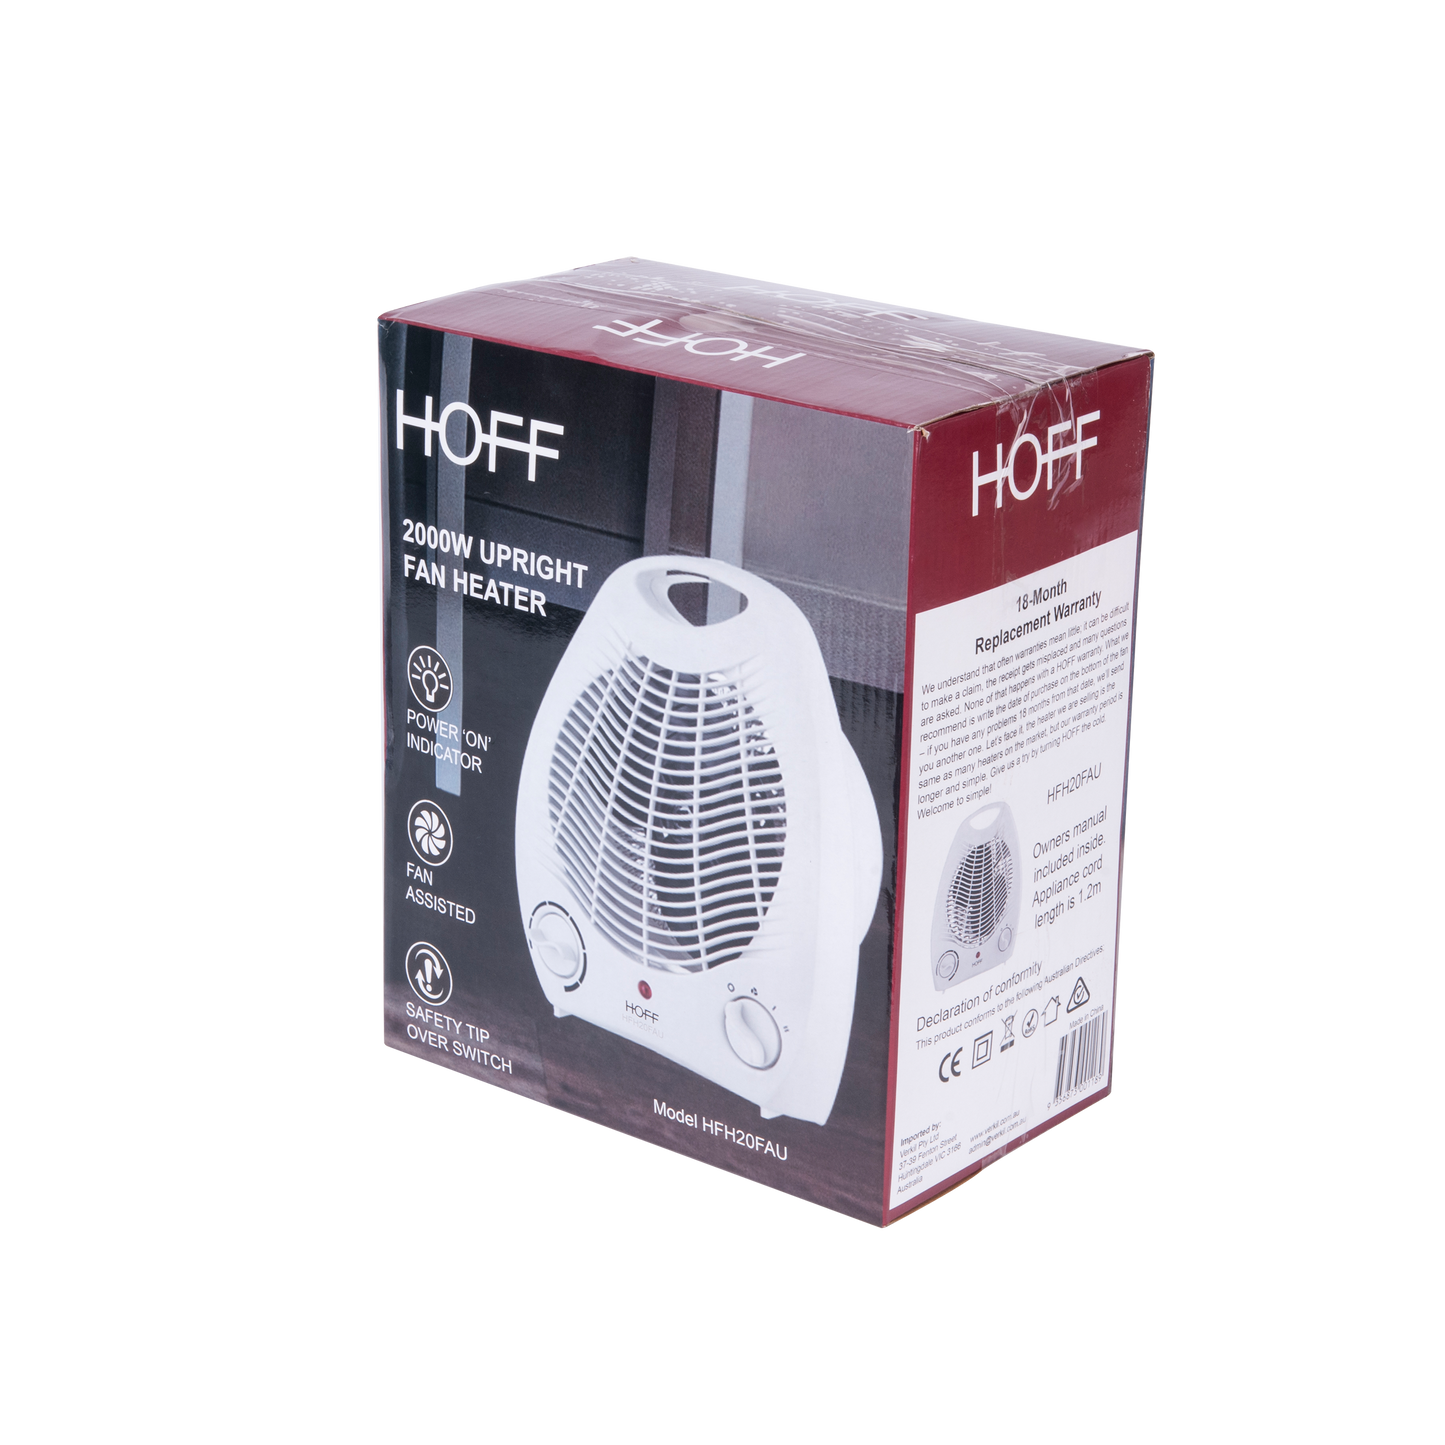 HOFF 2000W Upright Portable Fan Heater